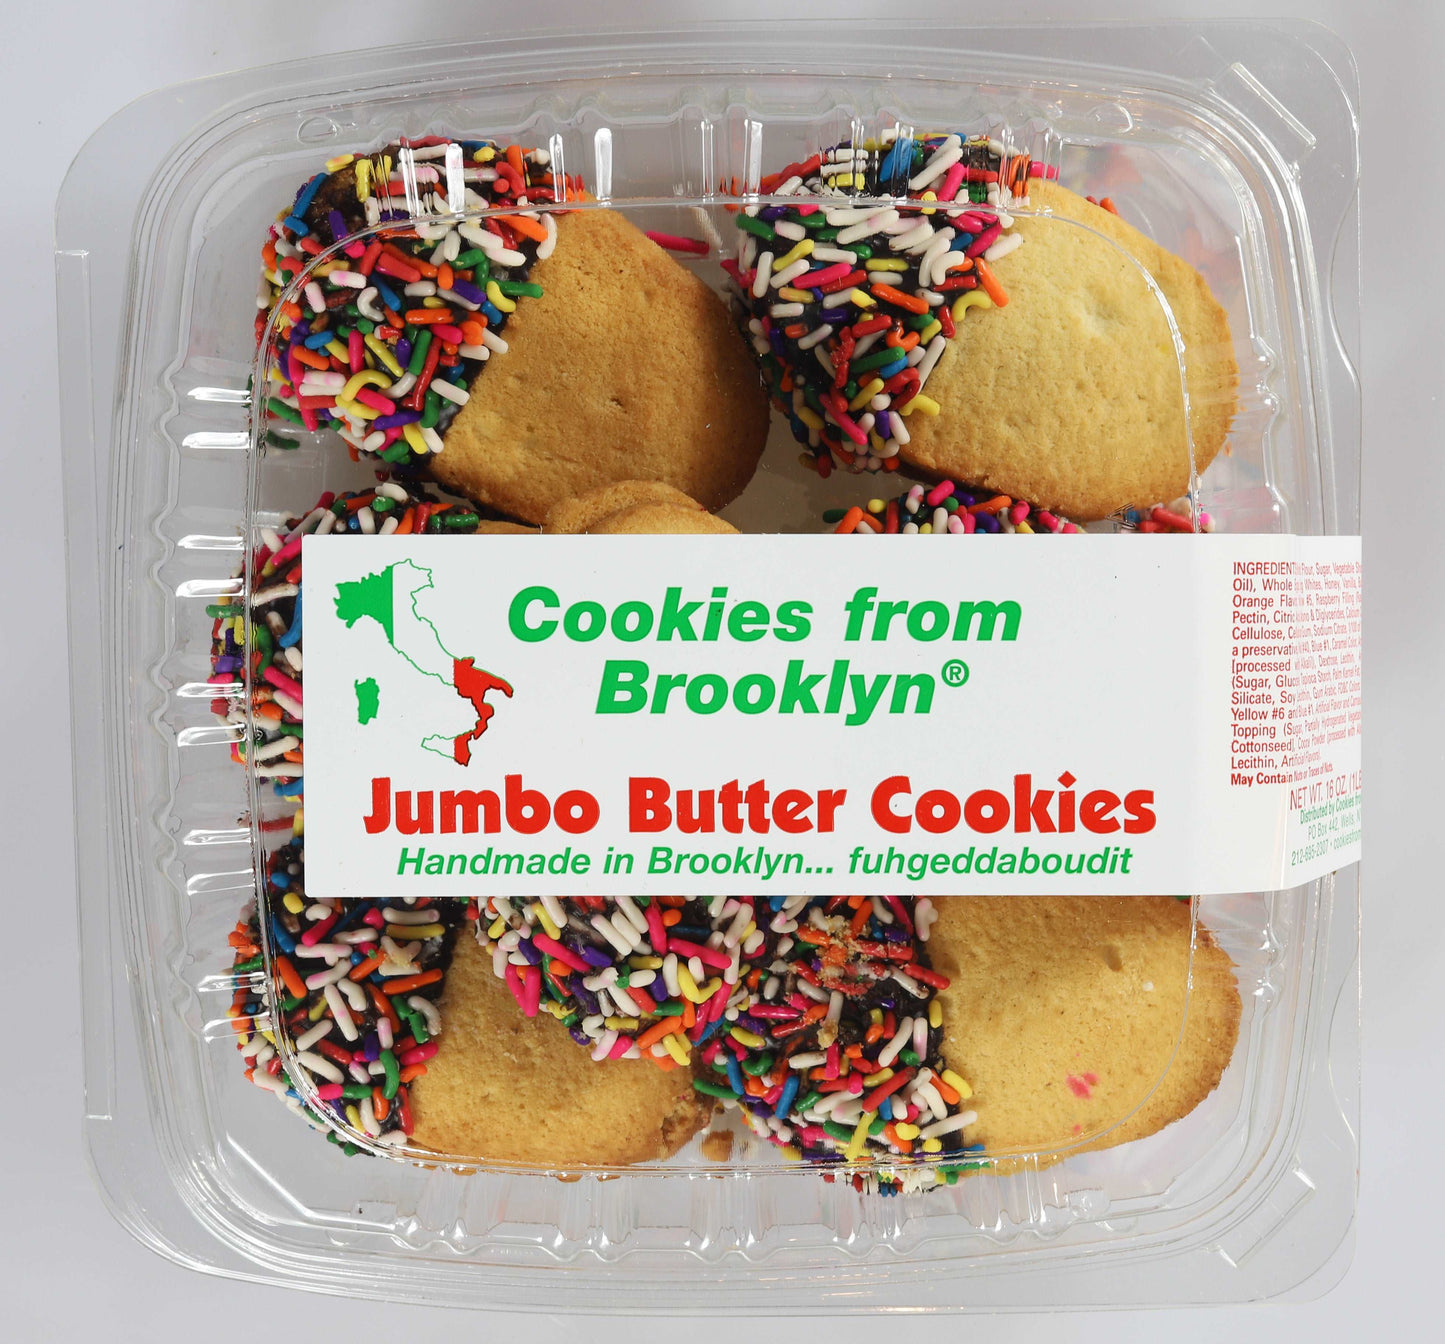 Jumbo Butter Cookies